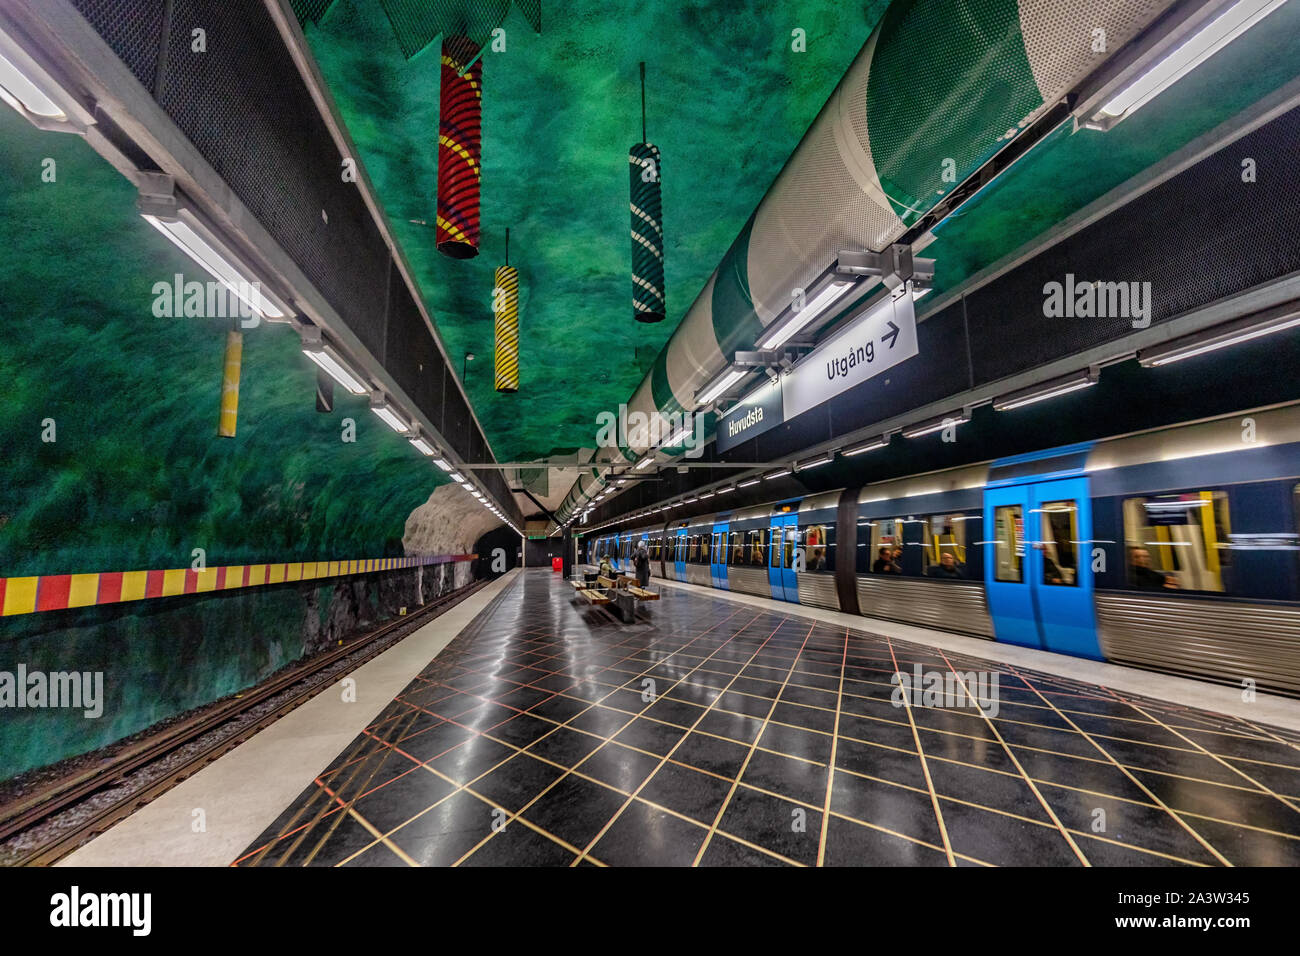 Huvudstra stazione della metropolitana sulla linea blu della metropolitana di Stoccolma (Tunnelbana) , situato in Huvudsta, Solna comune, centrale di Stoccolma, Svezia Foto Stock